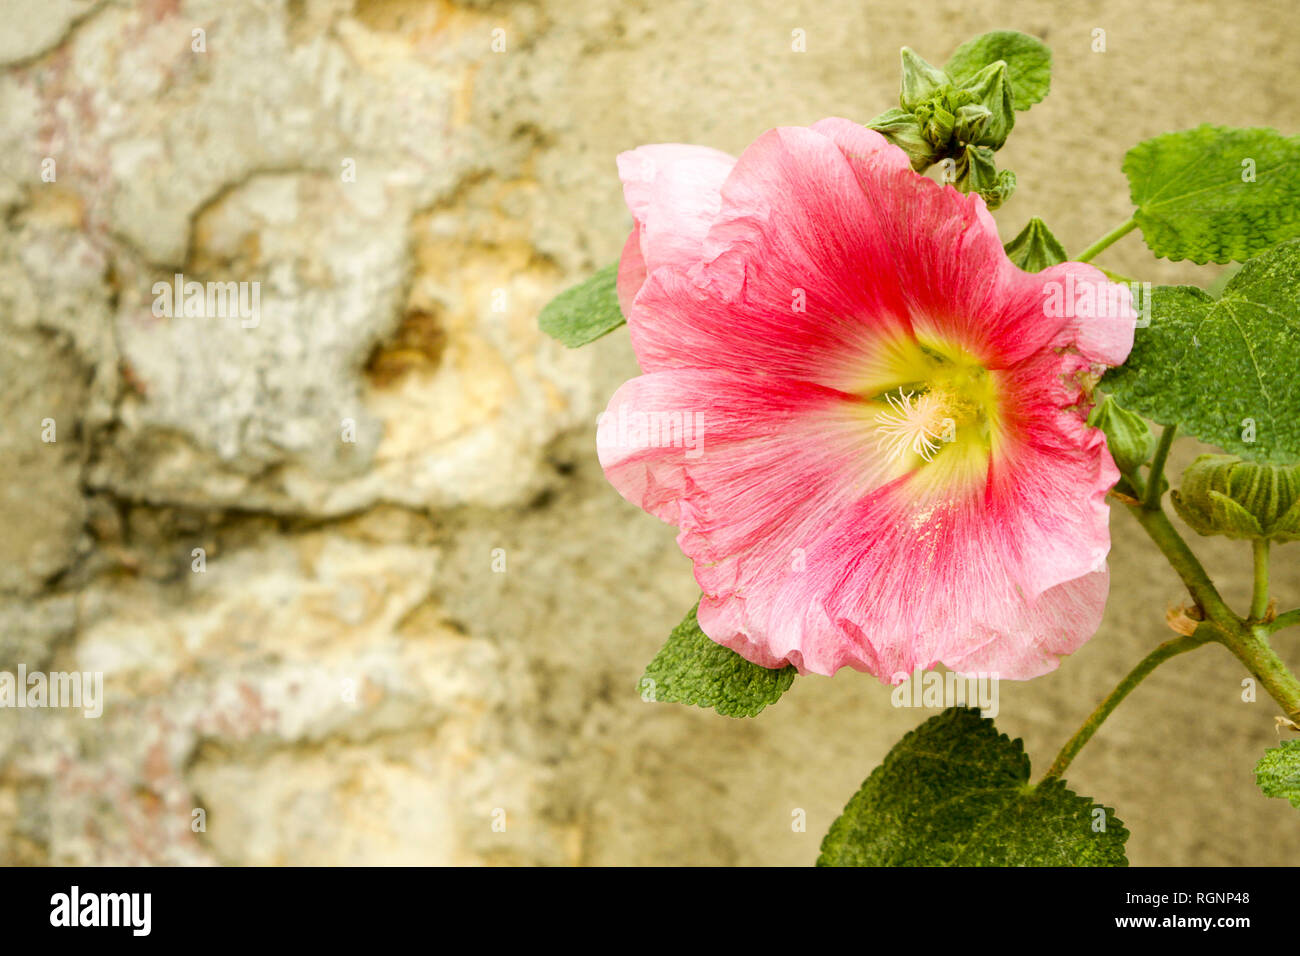 Pink hollyhock contro rustico in pietra a parete, Valle della Loira, Francia Foto Stock